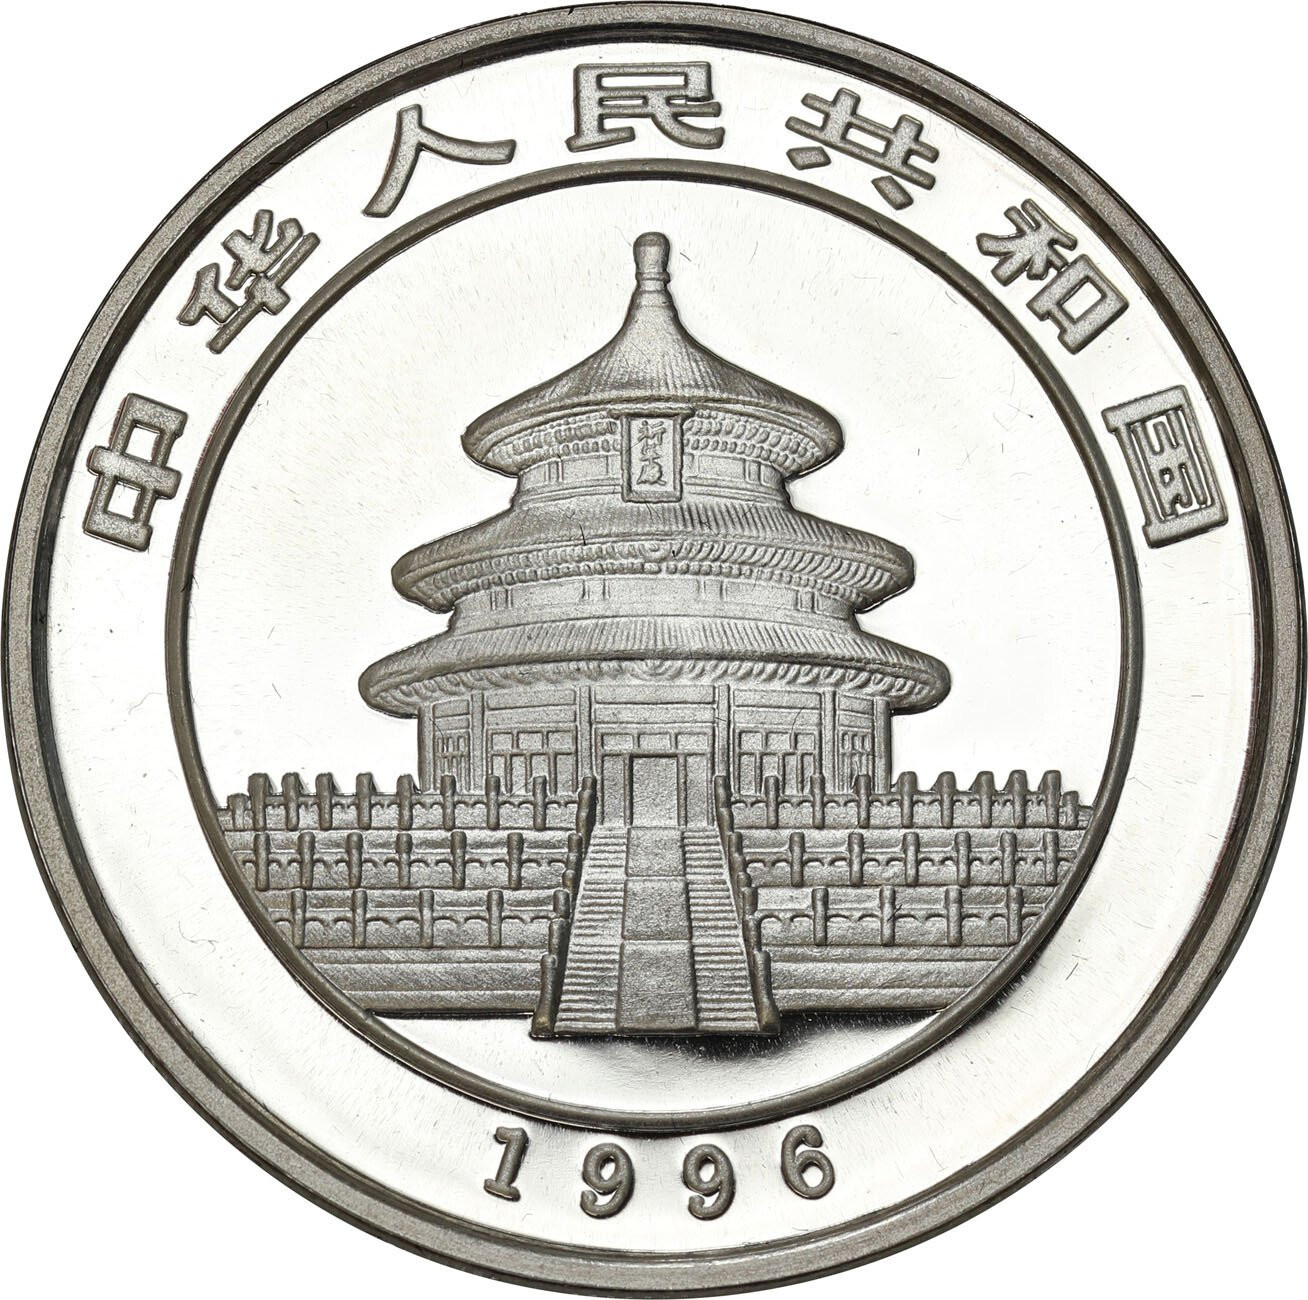 Chiny. 10 yuan 1996 - Panda 